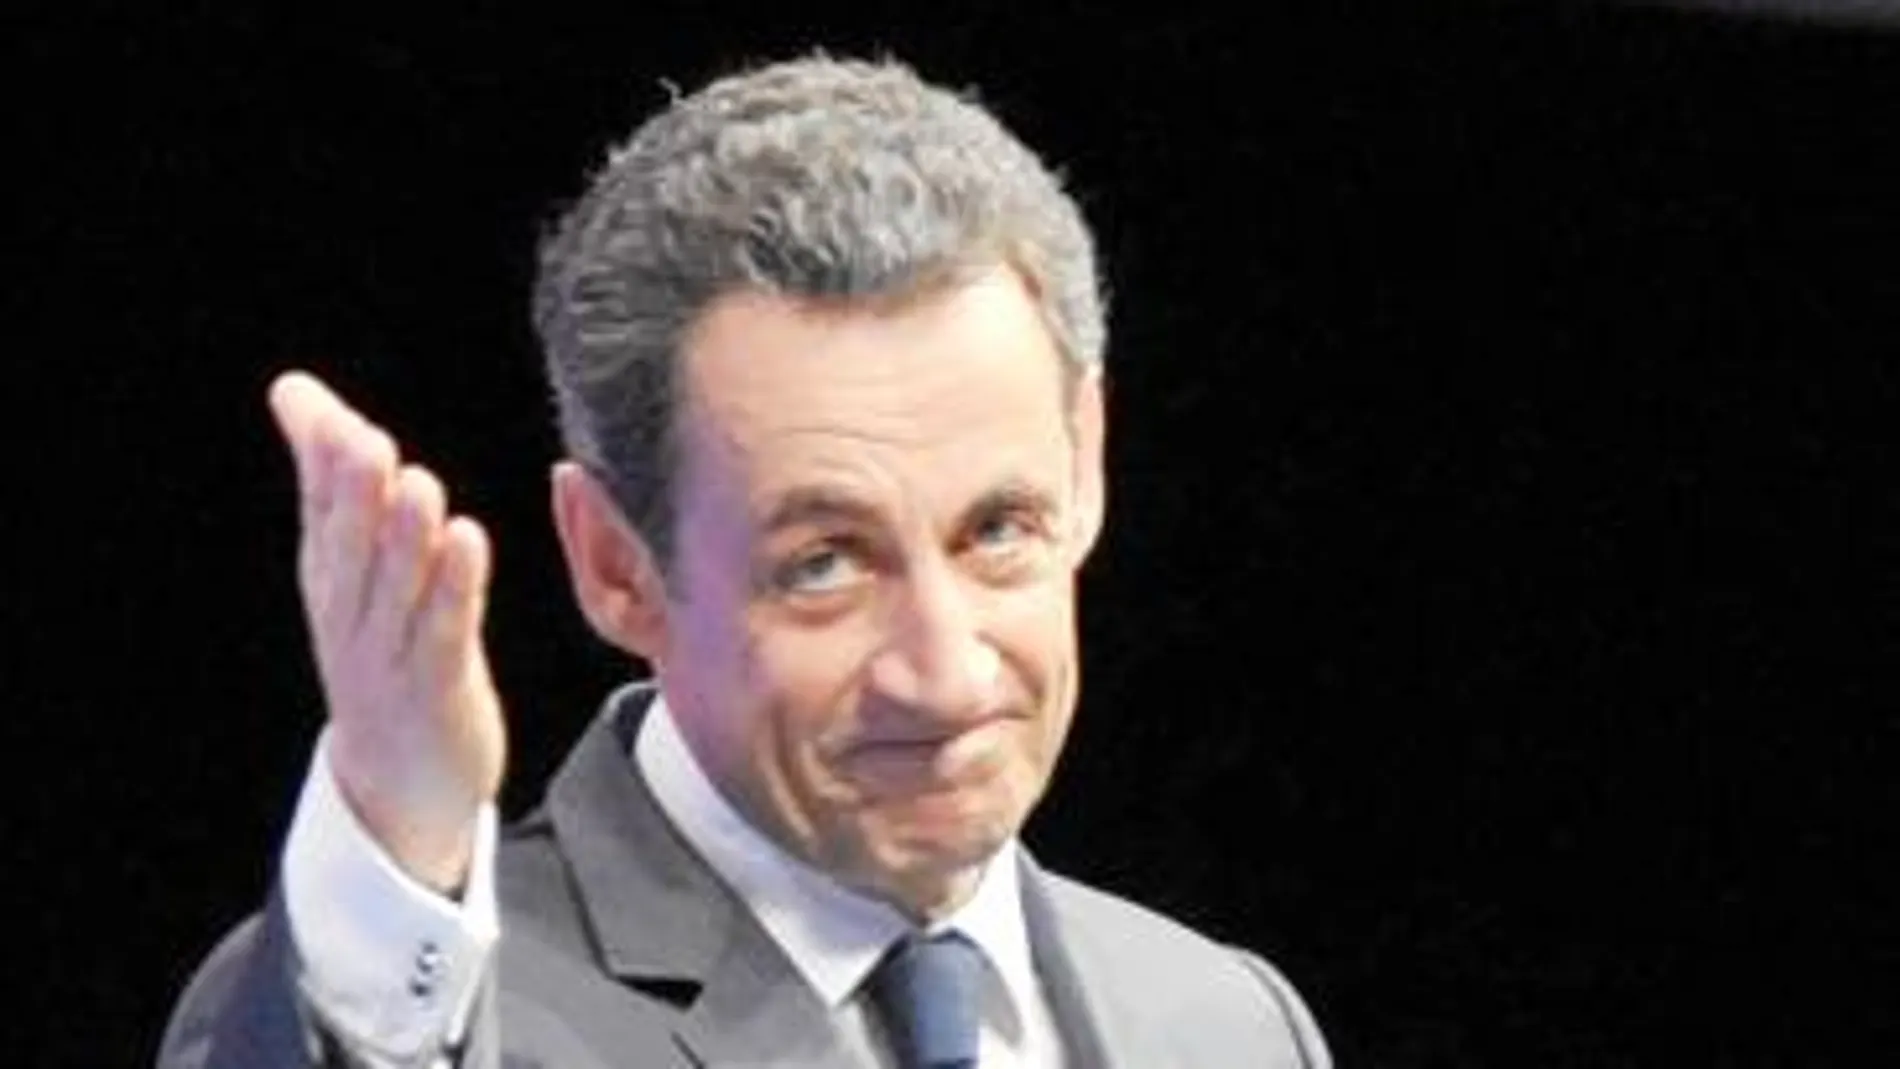 Un 59% de los franceses está en contra del regreso de Sarkozy a la vida política